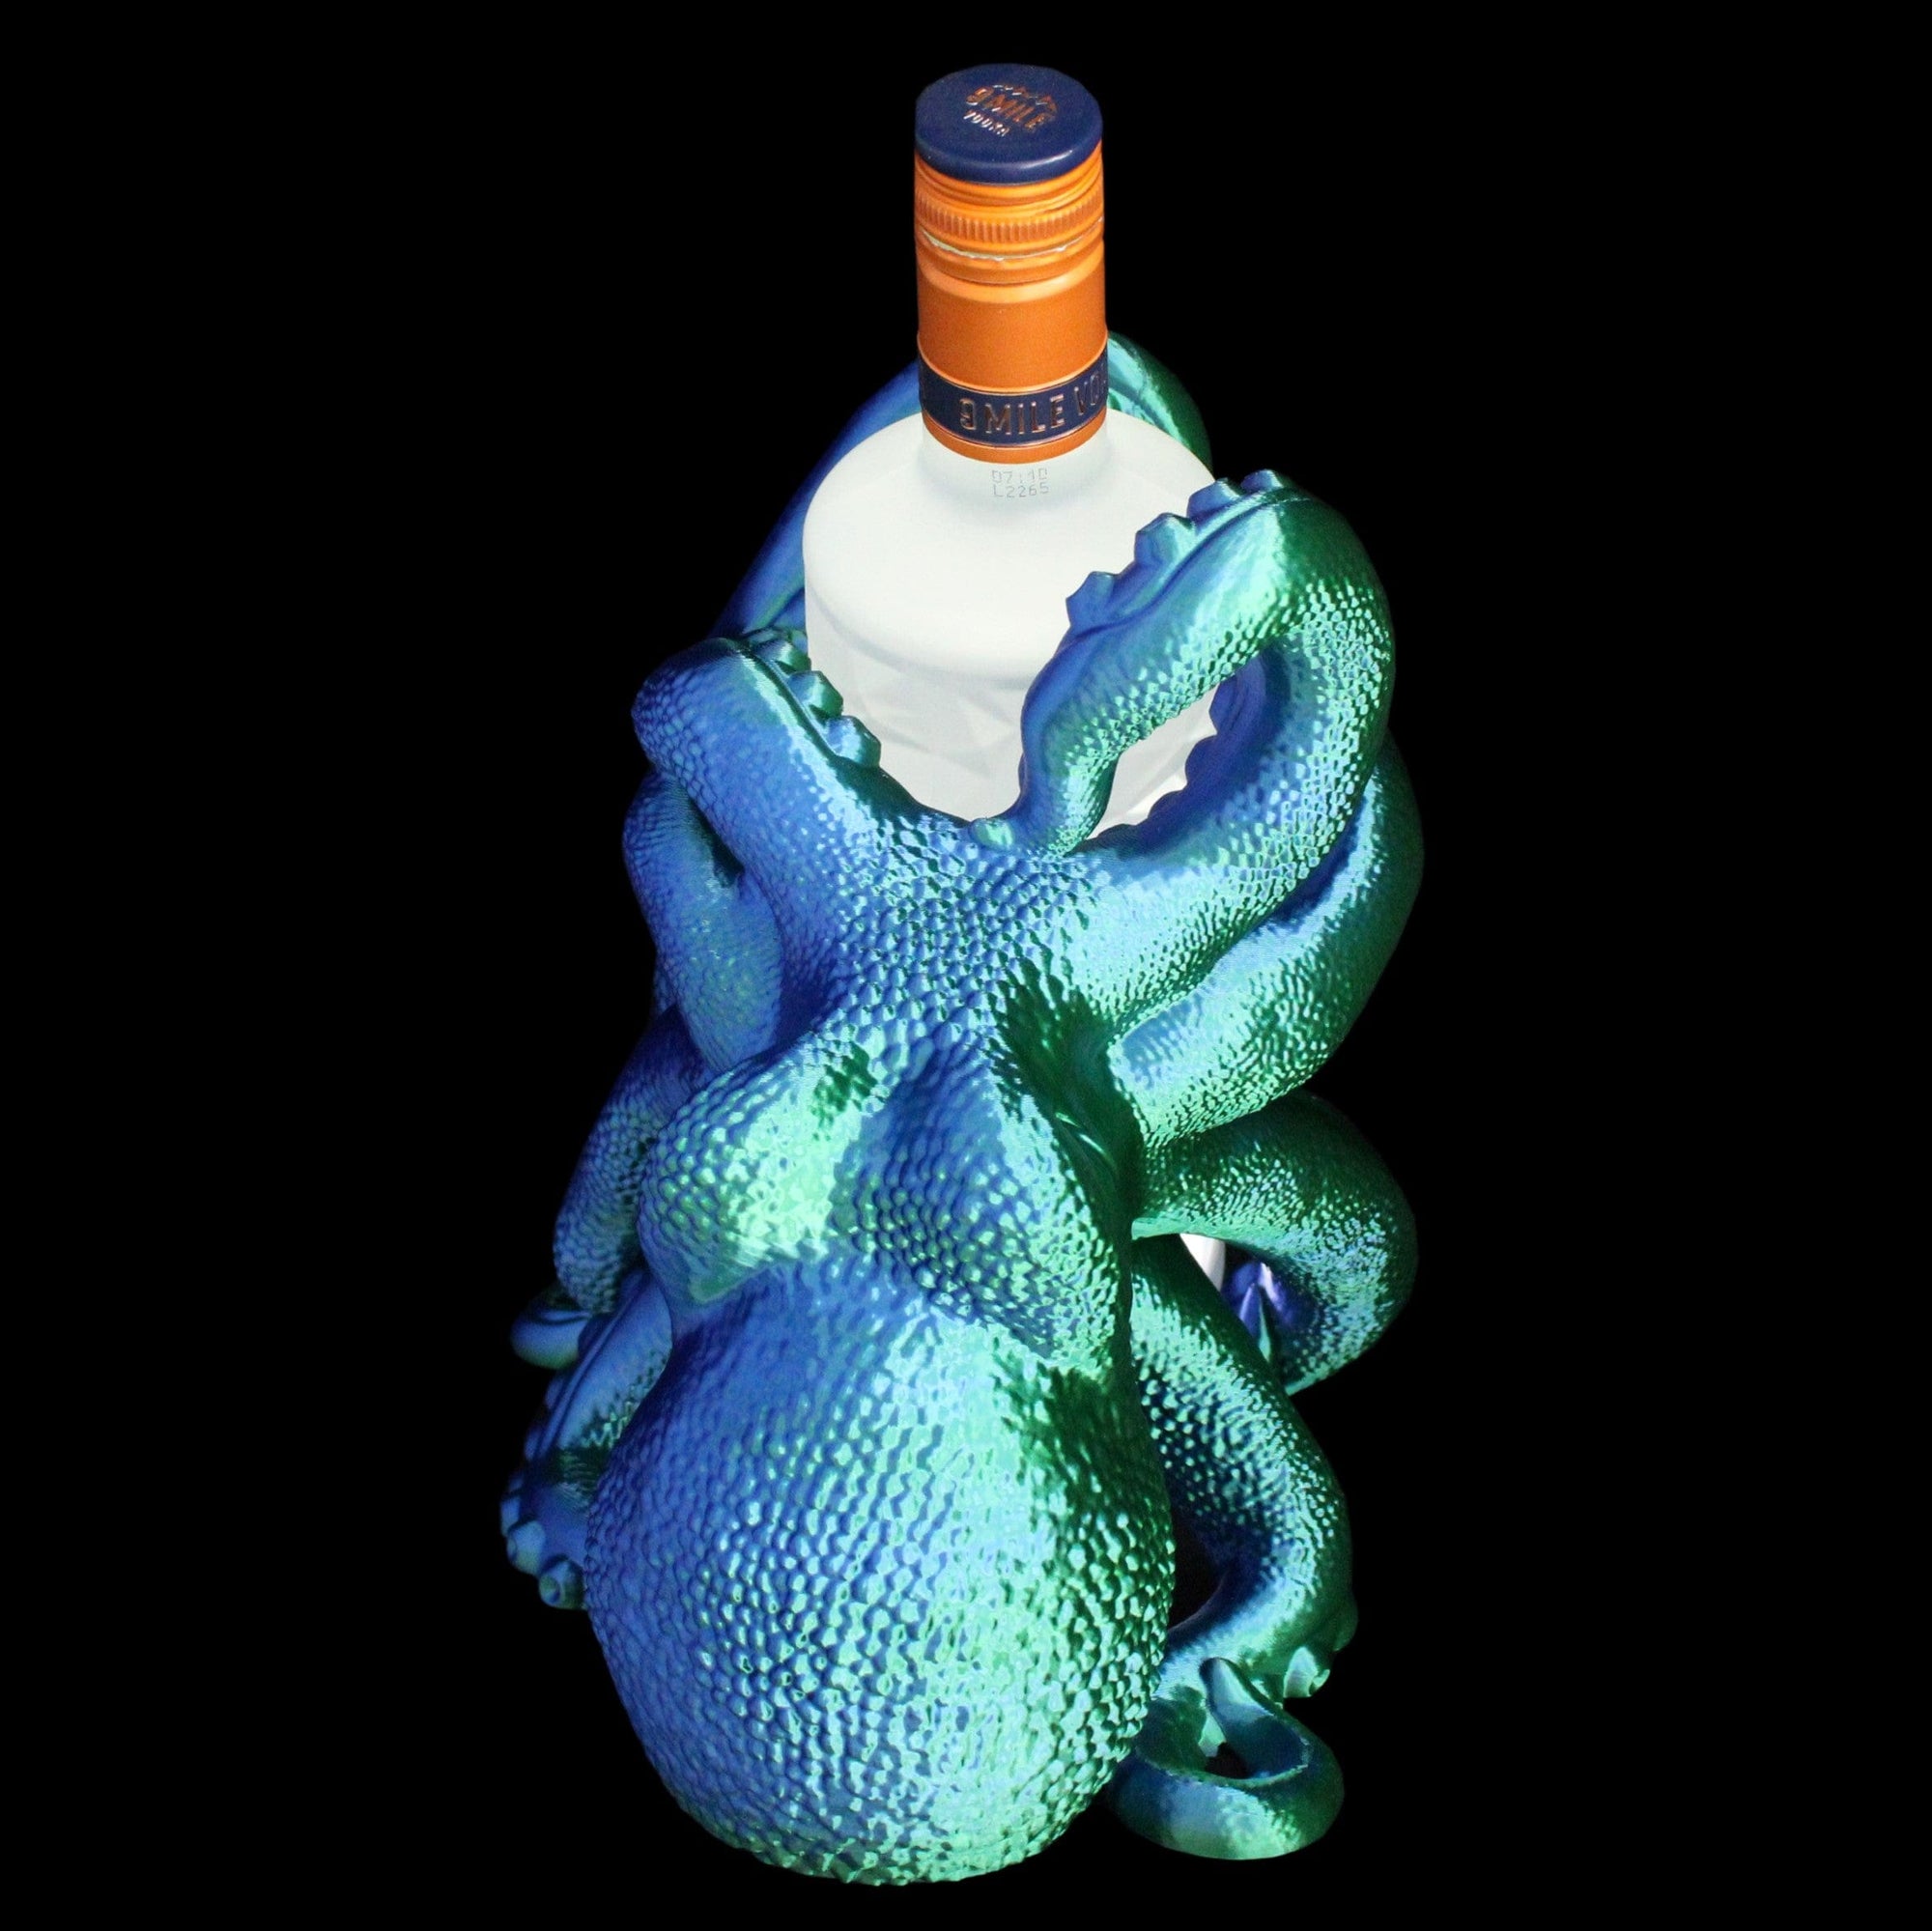 Flaschenhalter in blau und grün